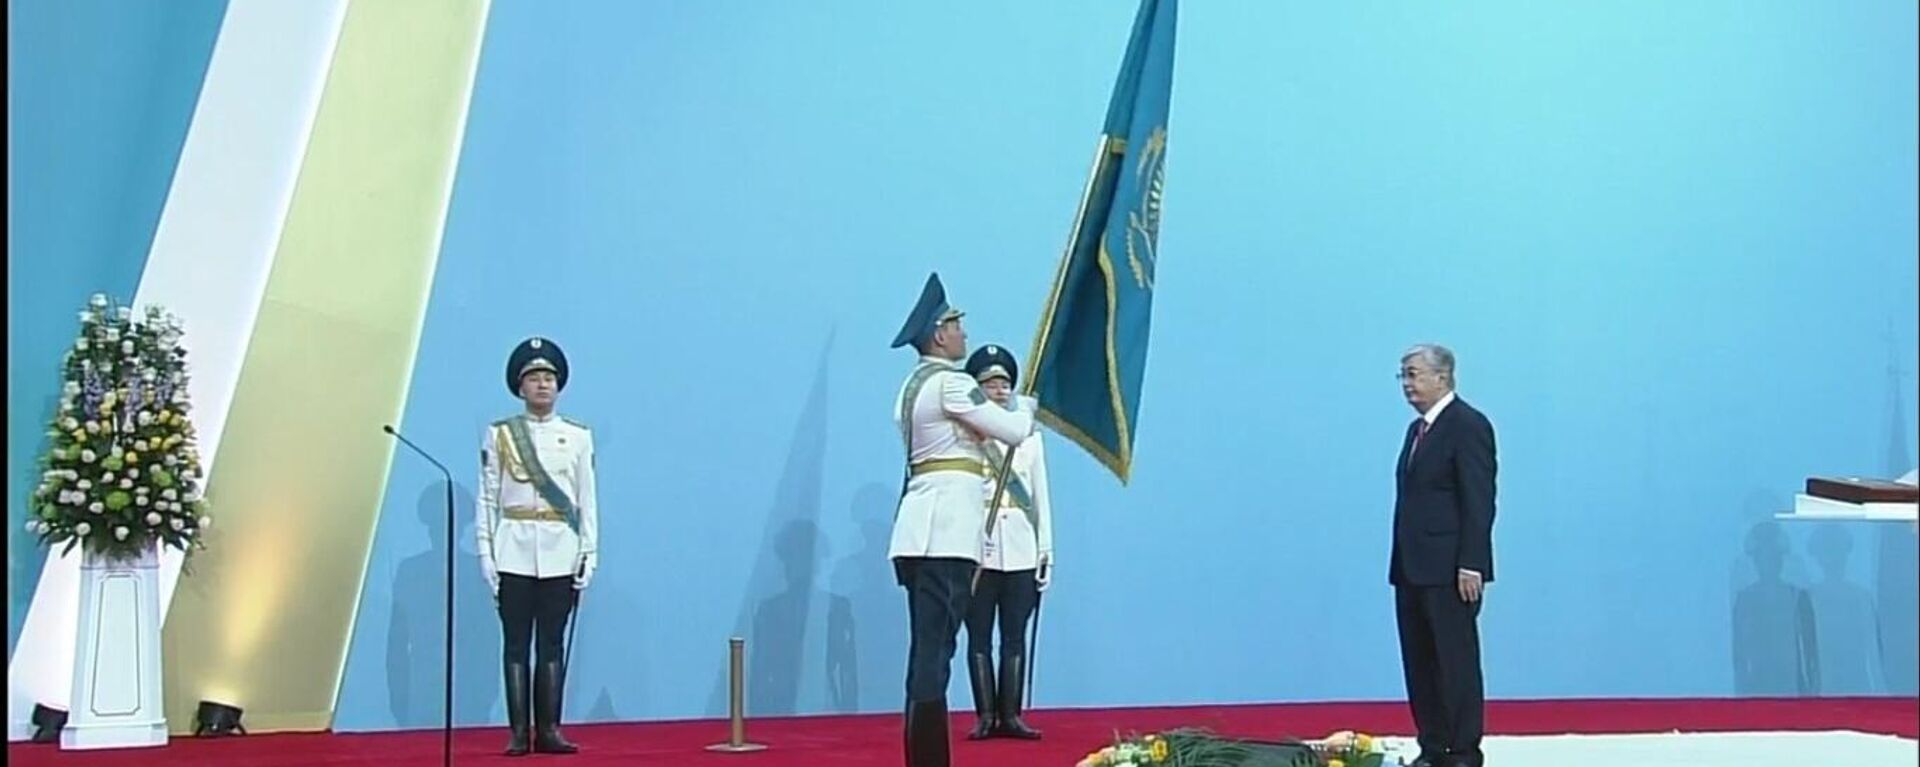 Торжественная церемония инаугурации президента Касым-Жомарта Токаева во Дворце Независимости в Астане, 26 ноября 2022 года - Sputnik Казахстан, 1920, 26.11.2022